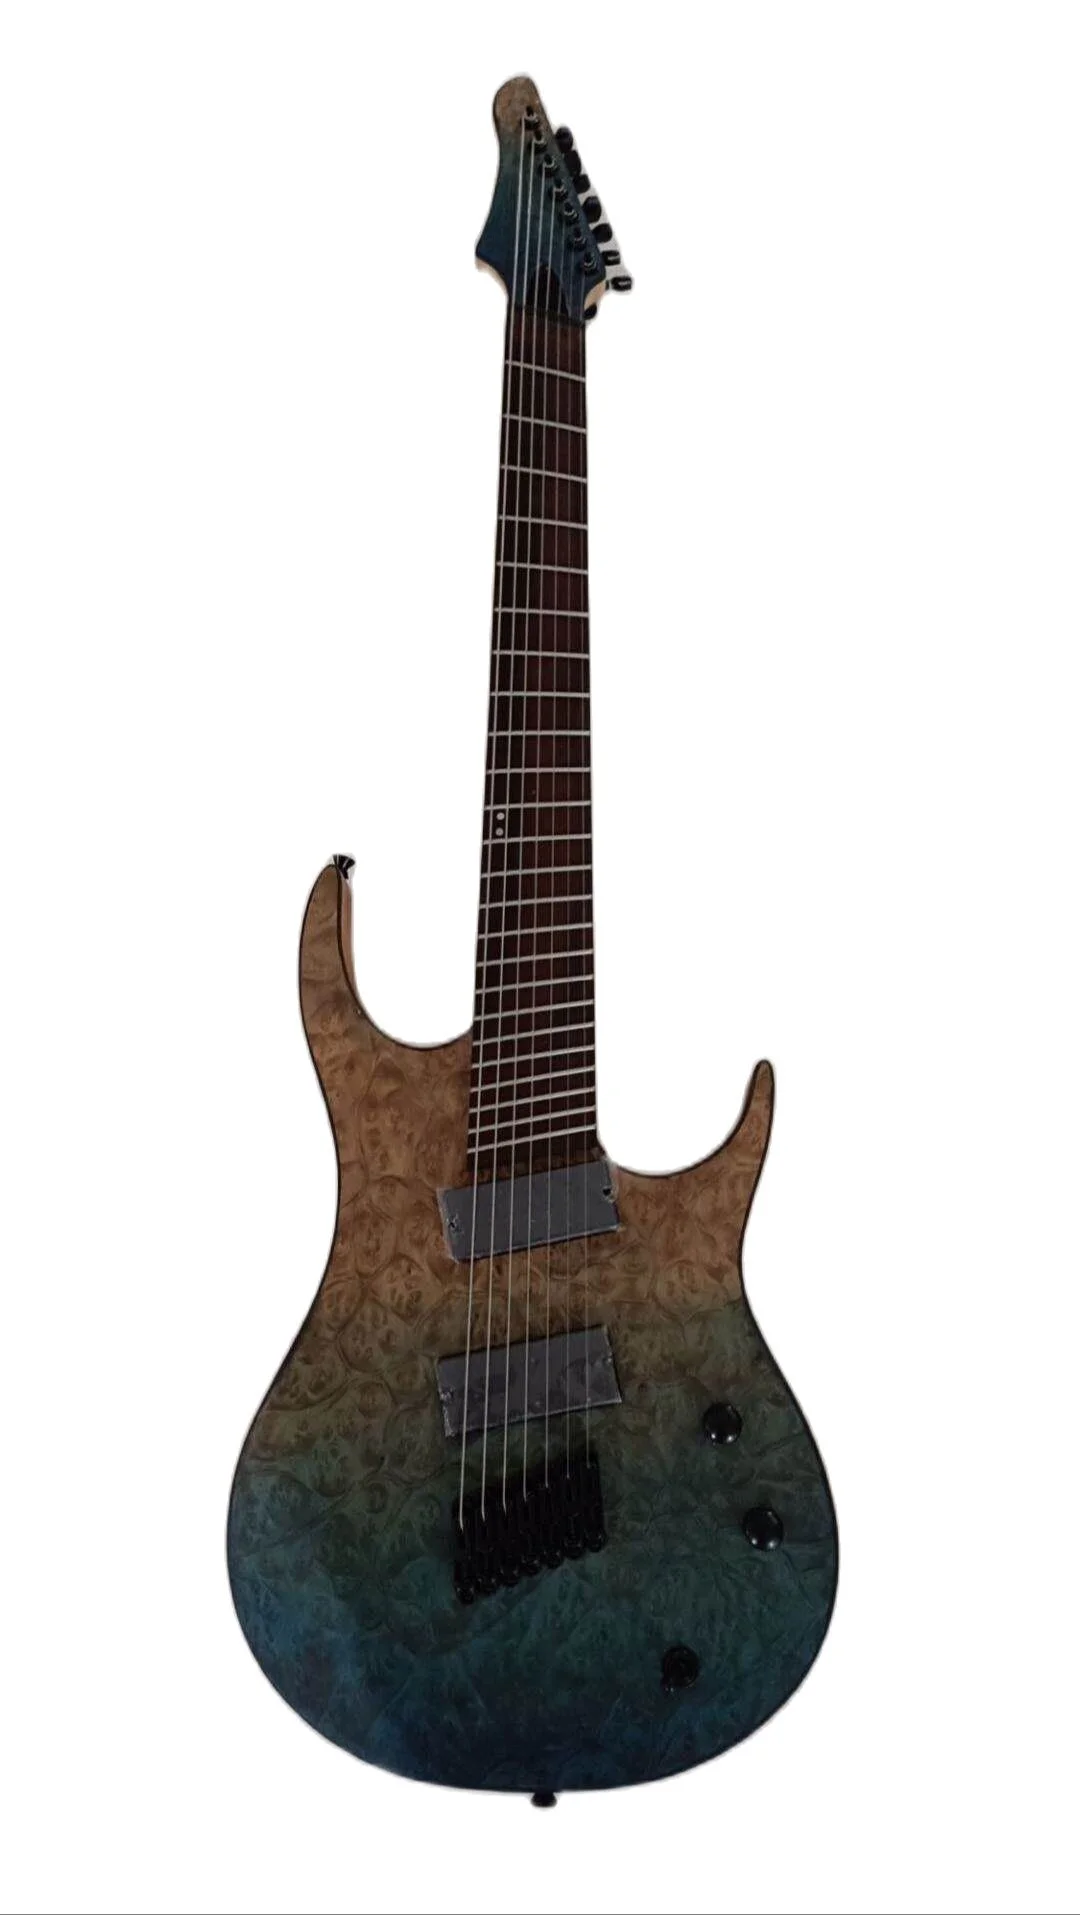 Fatto a mano generazione Pro Fanned Fret 7 corde chitarra elettrica 8 corde  chitarra trapunta acero Top in acciaio inox Fret| | - AliExpress